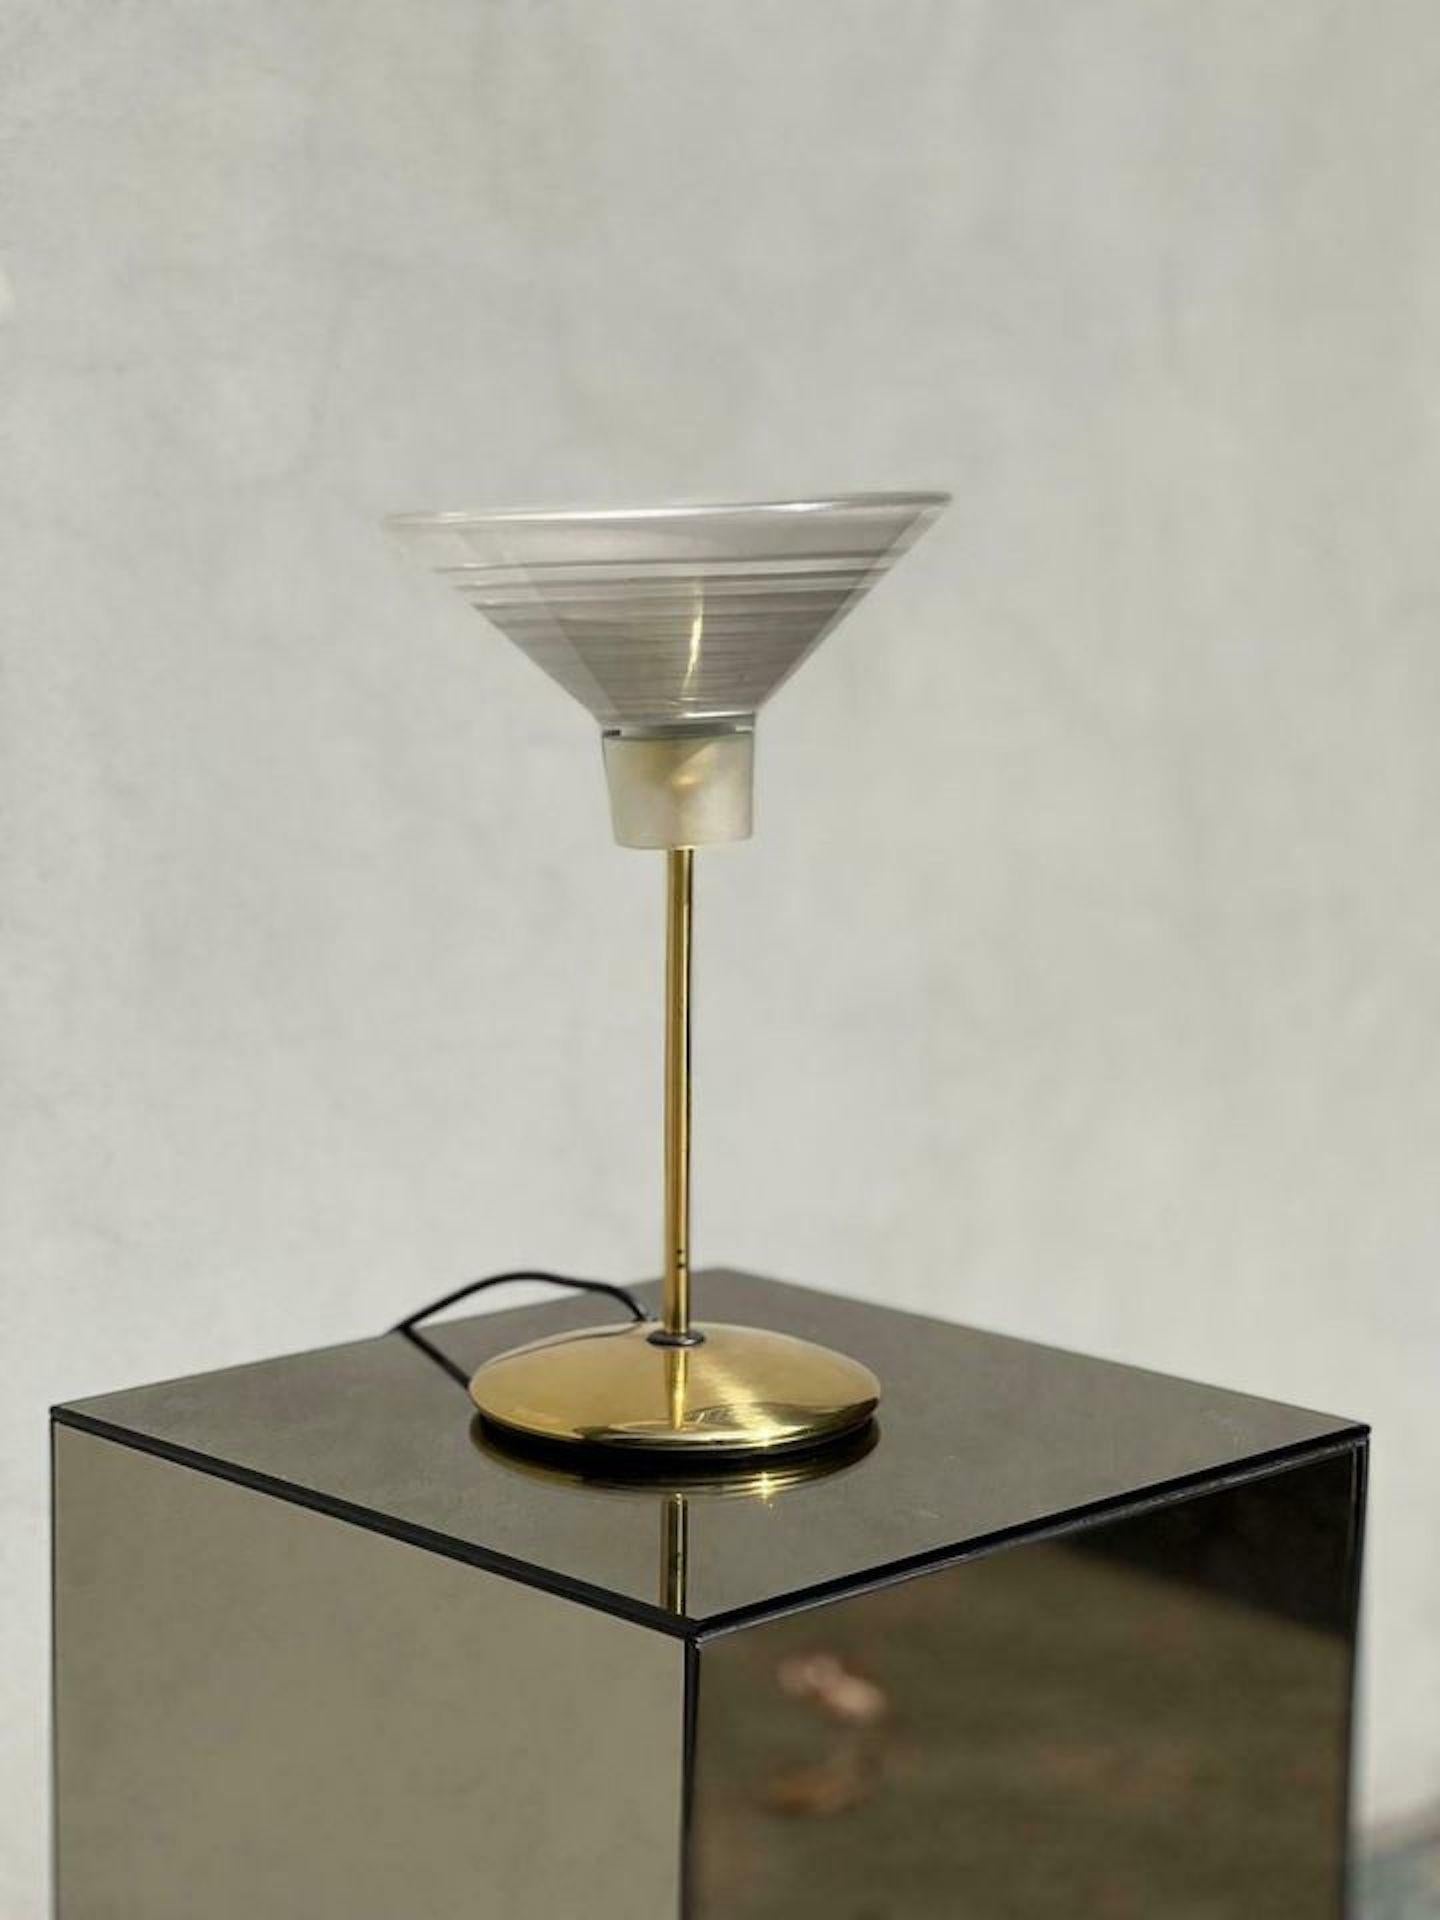 Lampada design da tavolo in ottone con vetro stampato realizzata in Italia nella seconda meta del XX secolo.